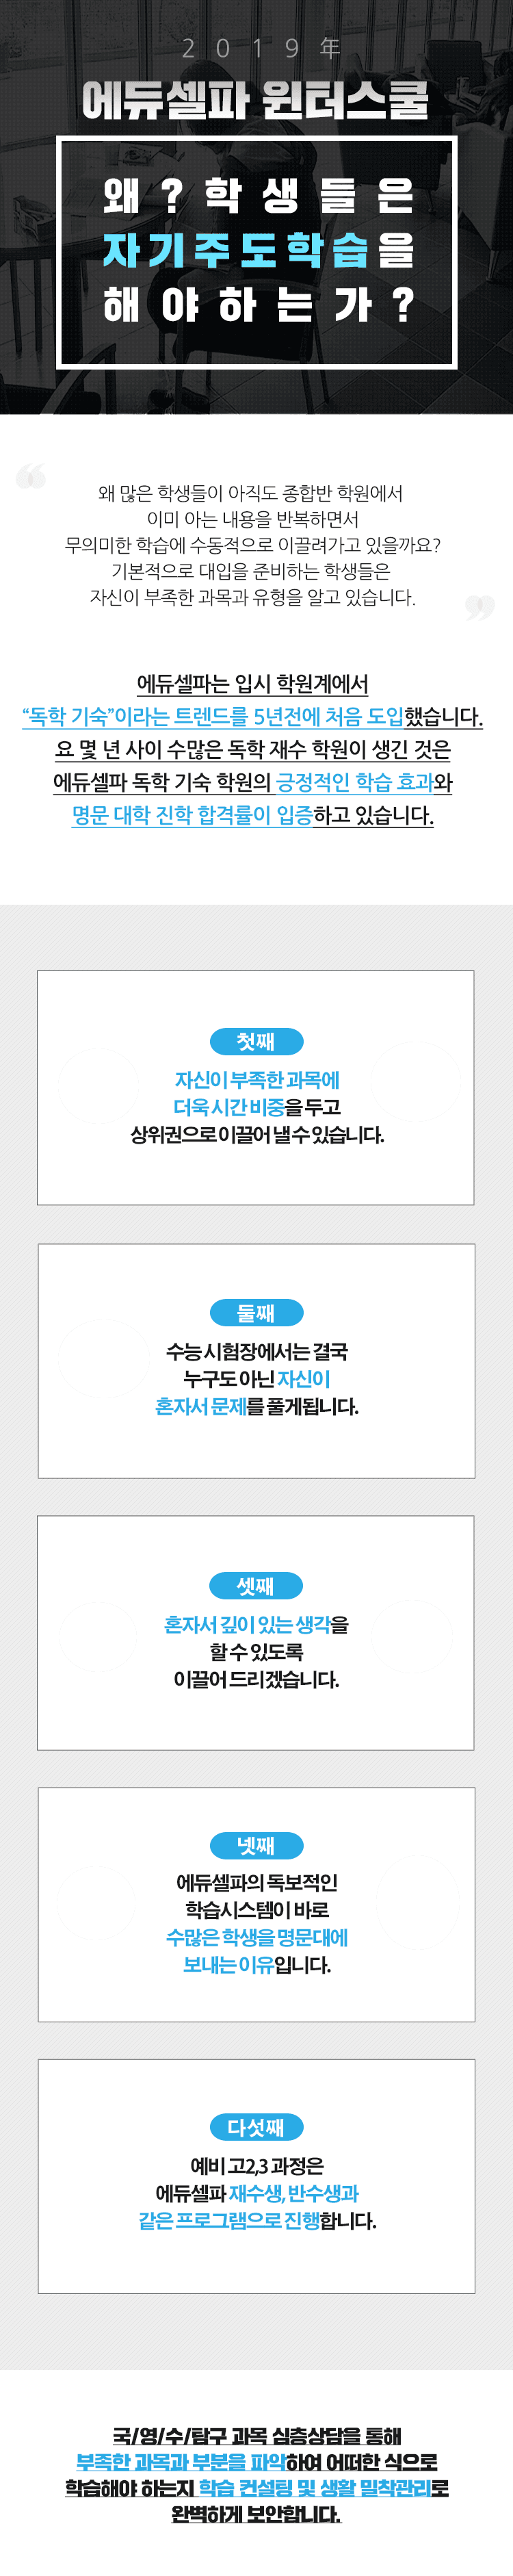 2019 윈터스쿨 에듀셀파 소개 mobile